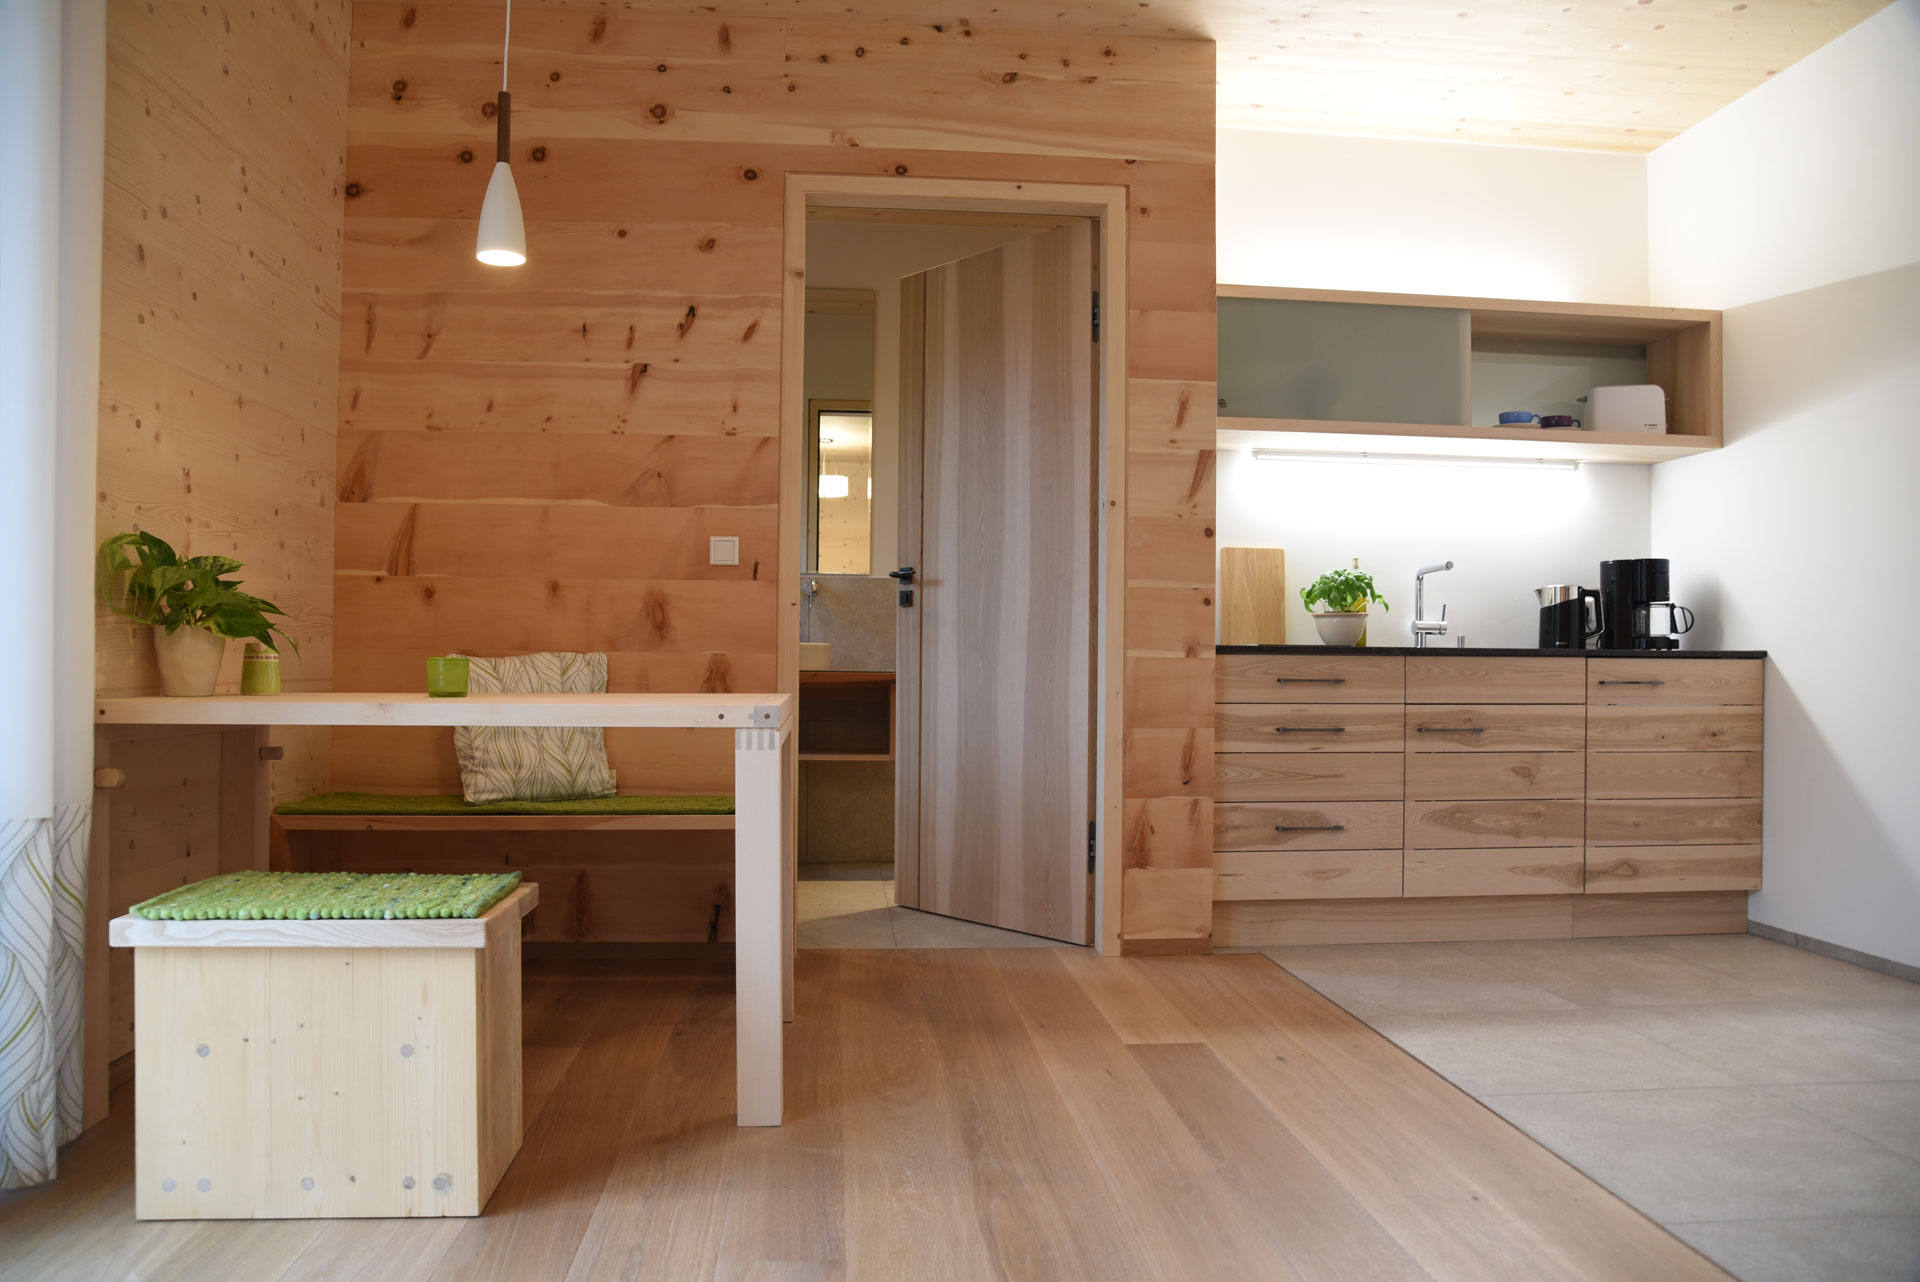 Esstisch und Küche in der Holz100-Haus-Probewohnung in Bad Feilnbach